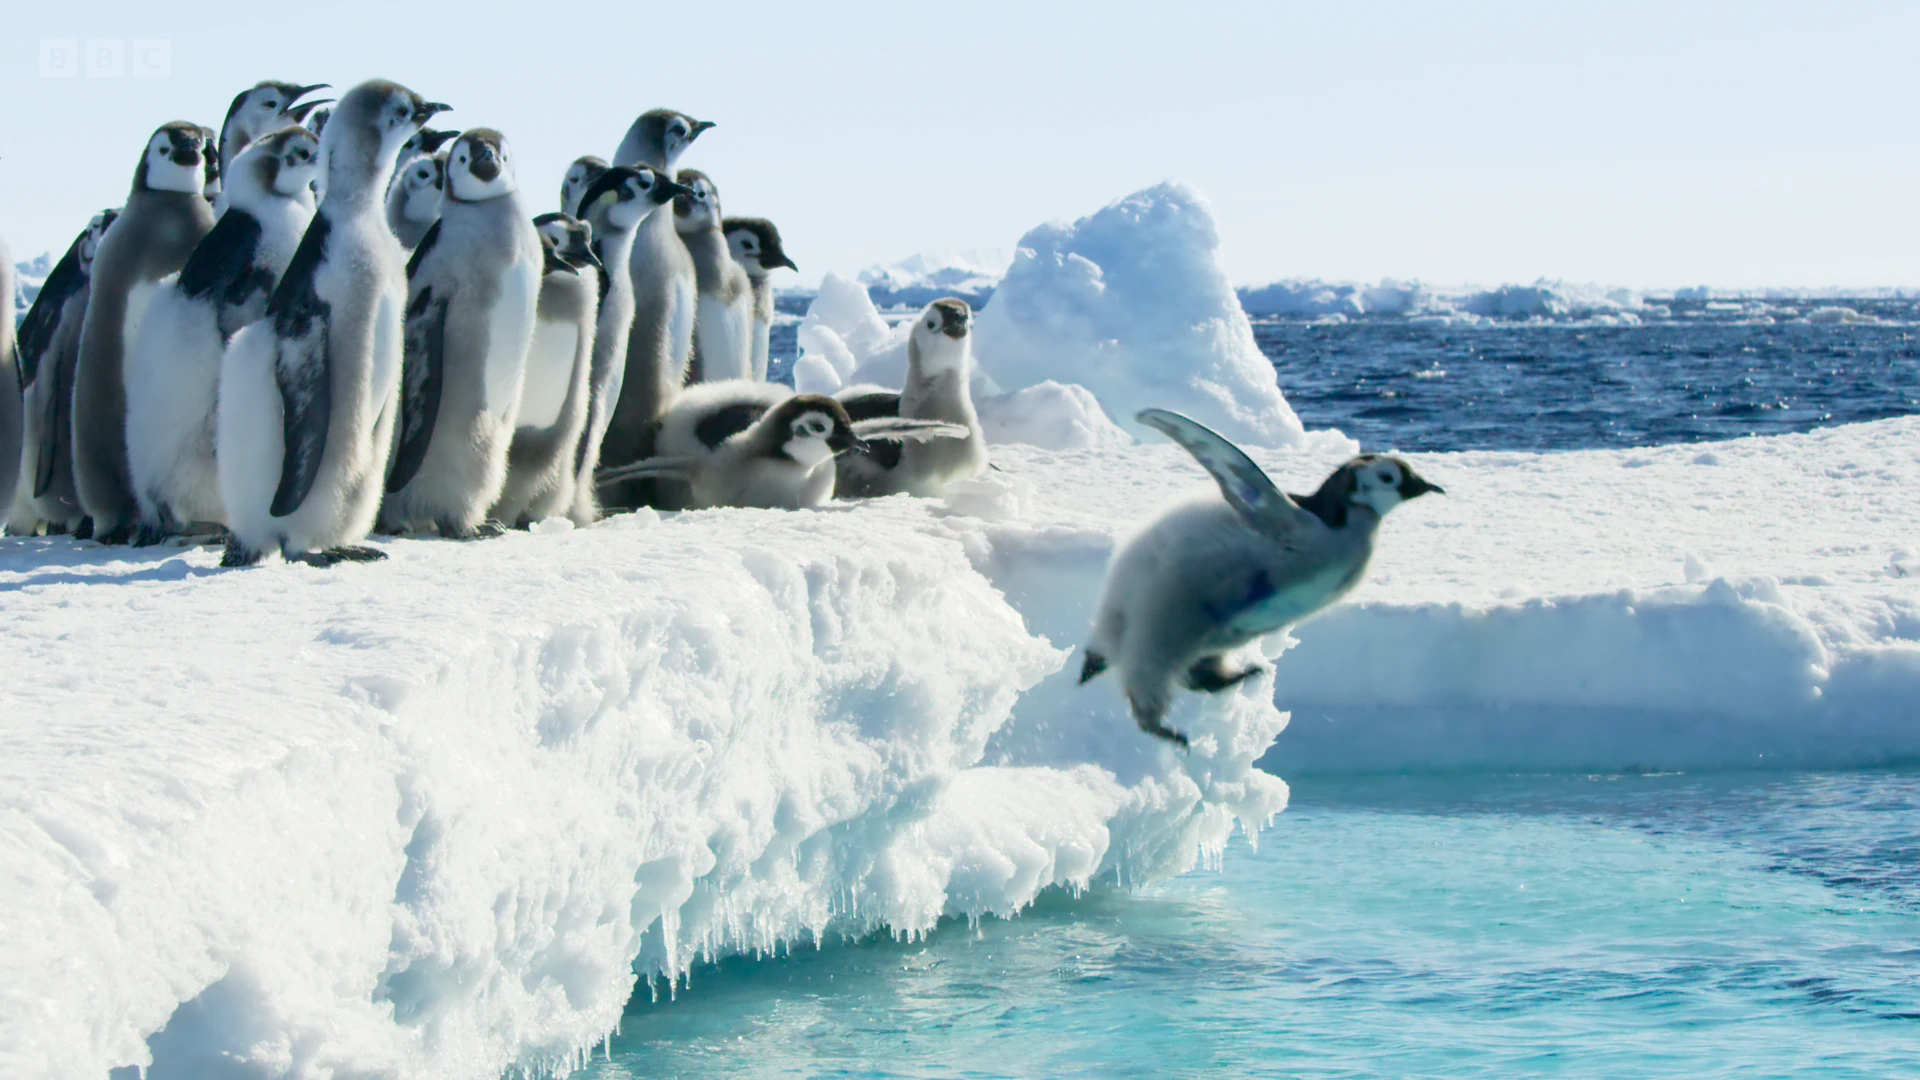 Emperor penguin (Aptenodytes forsteri) as shown in Frozen Planet II - Frozen Worlds